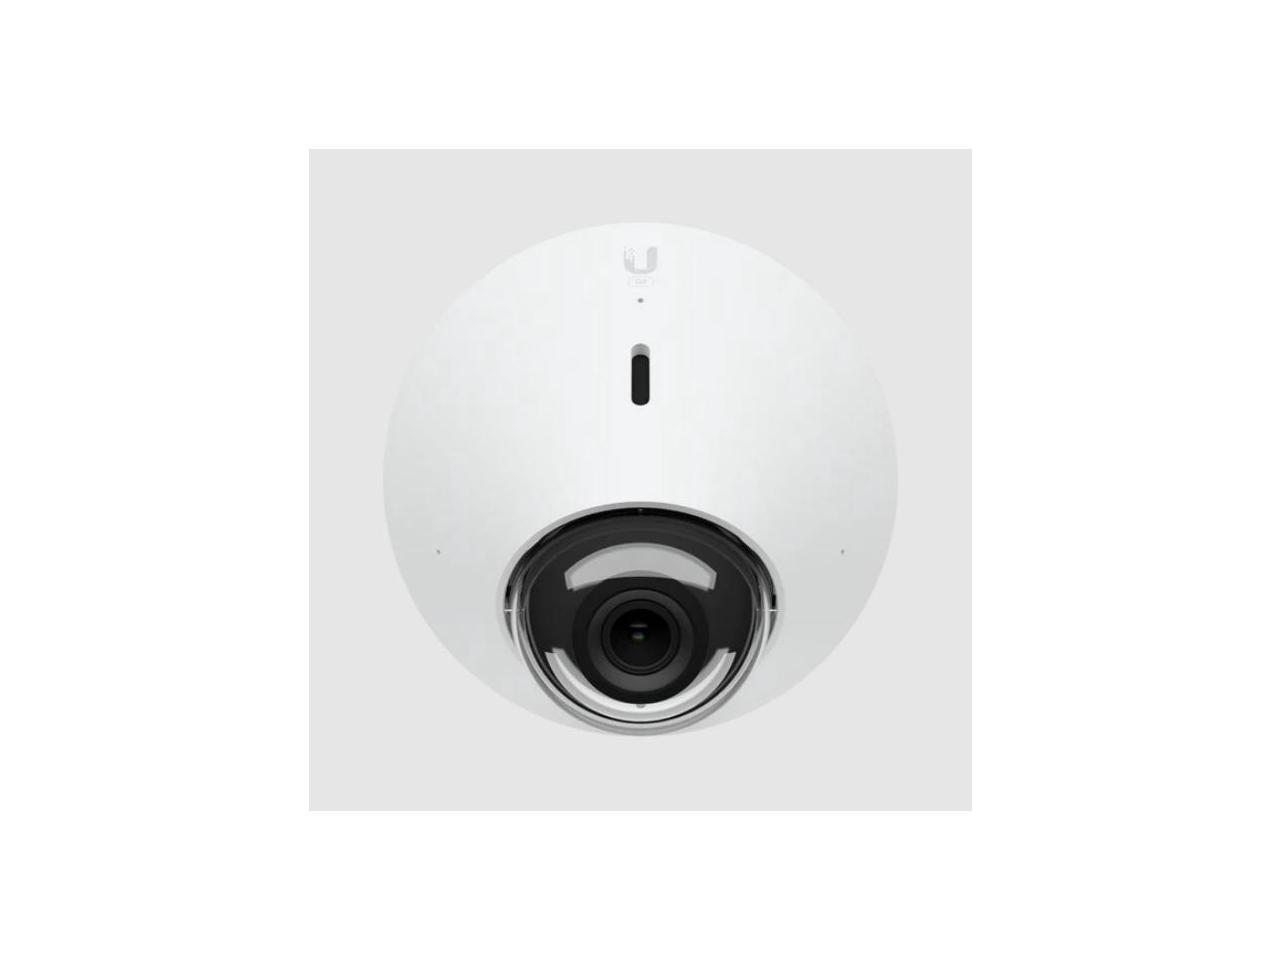 Ubiquiti Camera G5 Dome - Newegg.com